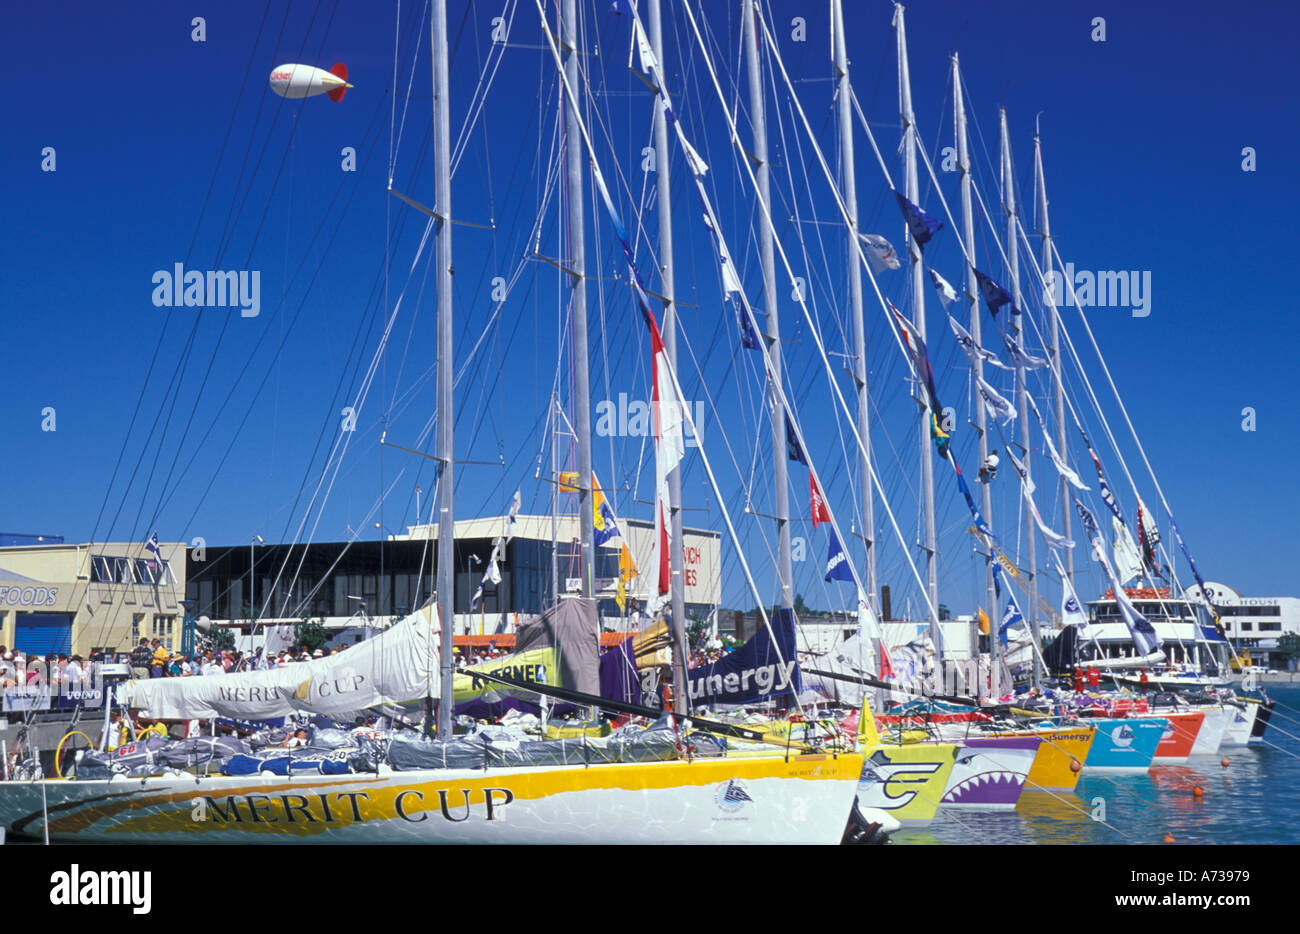 Il colorfully liveried Whitbread Round the World Yacht Race flotta in preparazione per la partenza da Auckland s Viaduct Basin Foto Stock